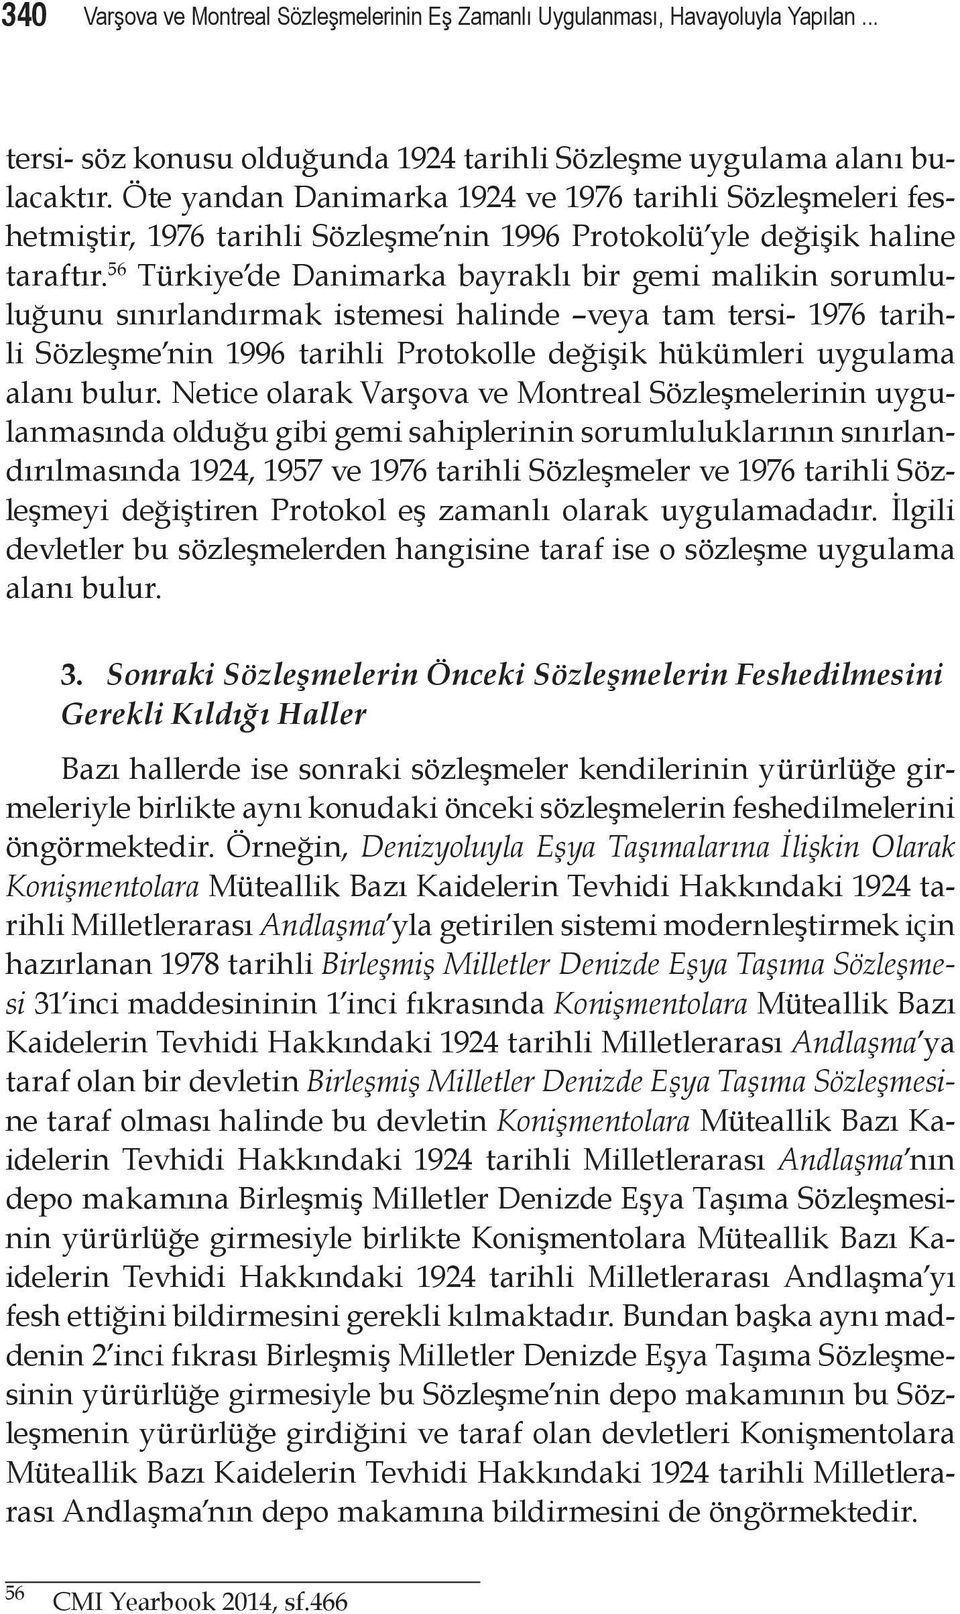 56 Türkiye de Danimarka bayraklı bir gemi malikin sorumluluğunu sınırlandırmak istemesi halinde veya tam tersi- 1976 tarihli Sözleşme nin 1996 tarihli Protokolle değişik hükümleri uygulama alanı